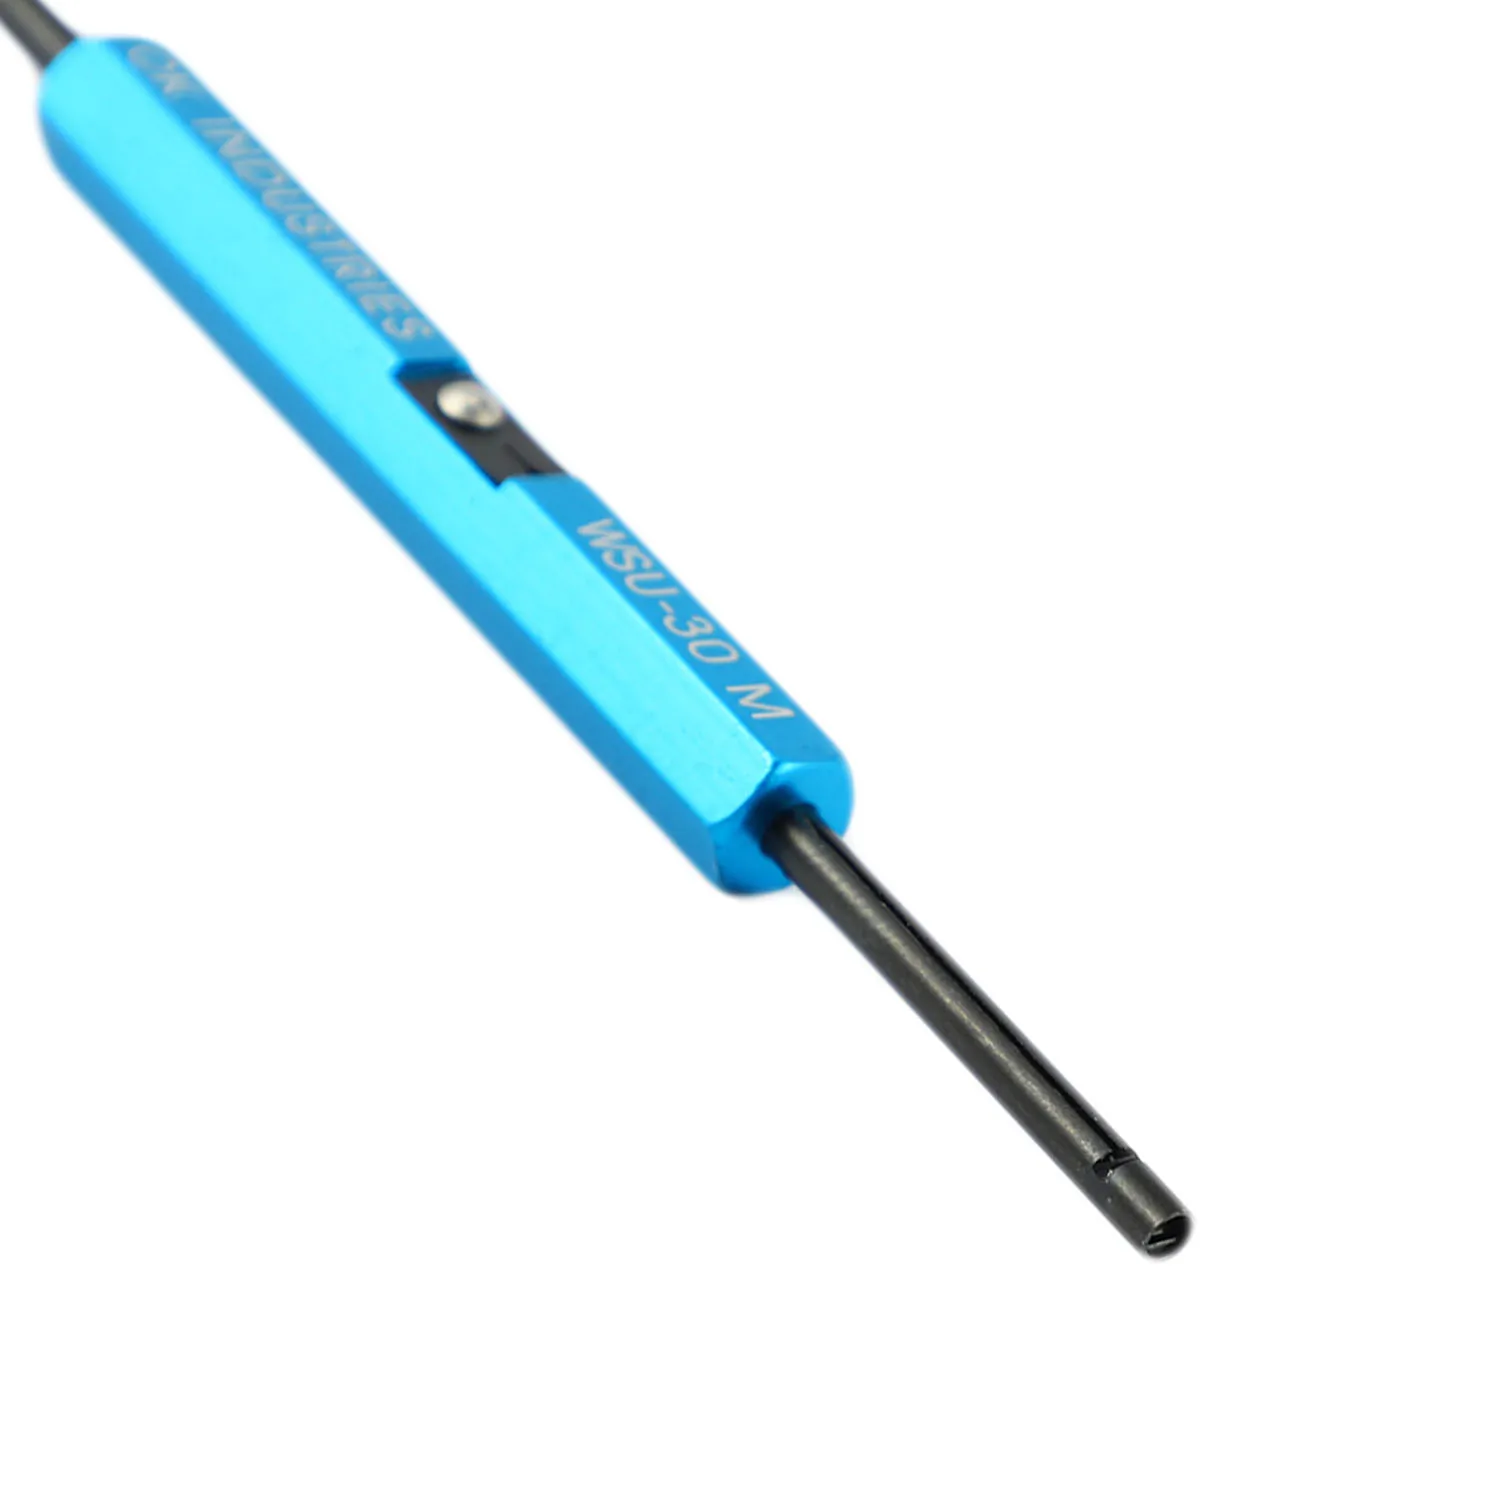 Новый Прочный Ручной Инструмент для намотки проволоки Wsu-30M Инструмент для разворачивания ленты для намотки прототипов кабелей Awg 30